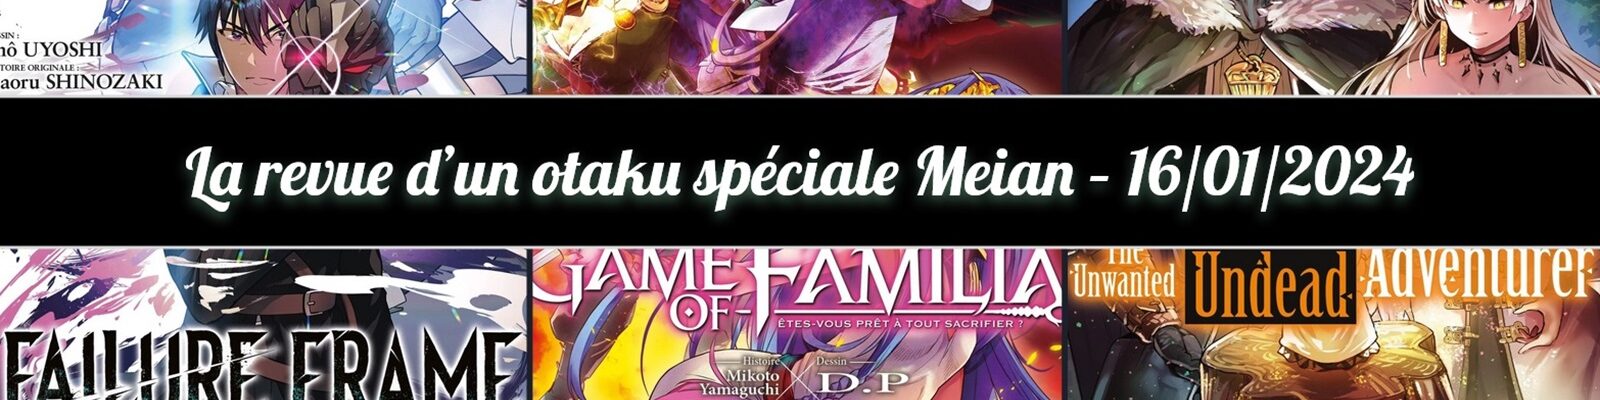 Game of Familia - Meian